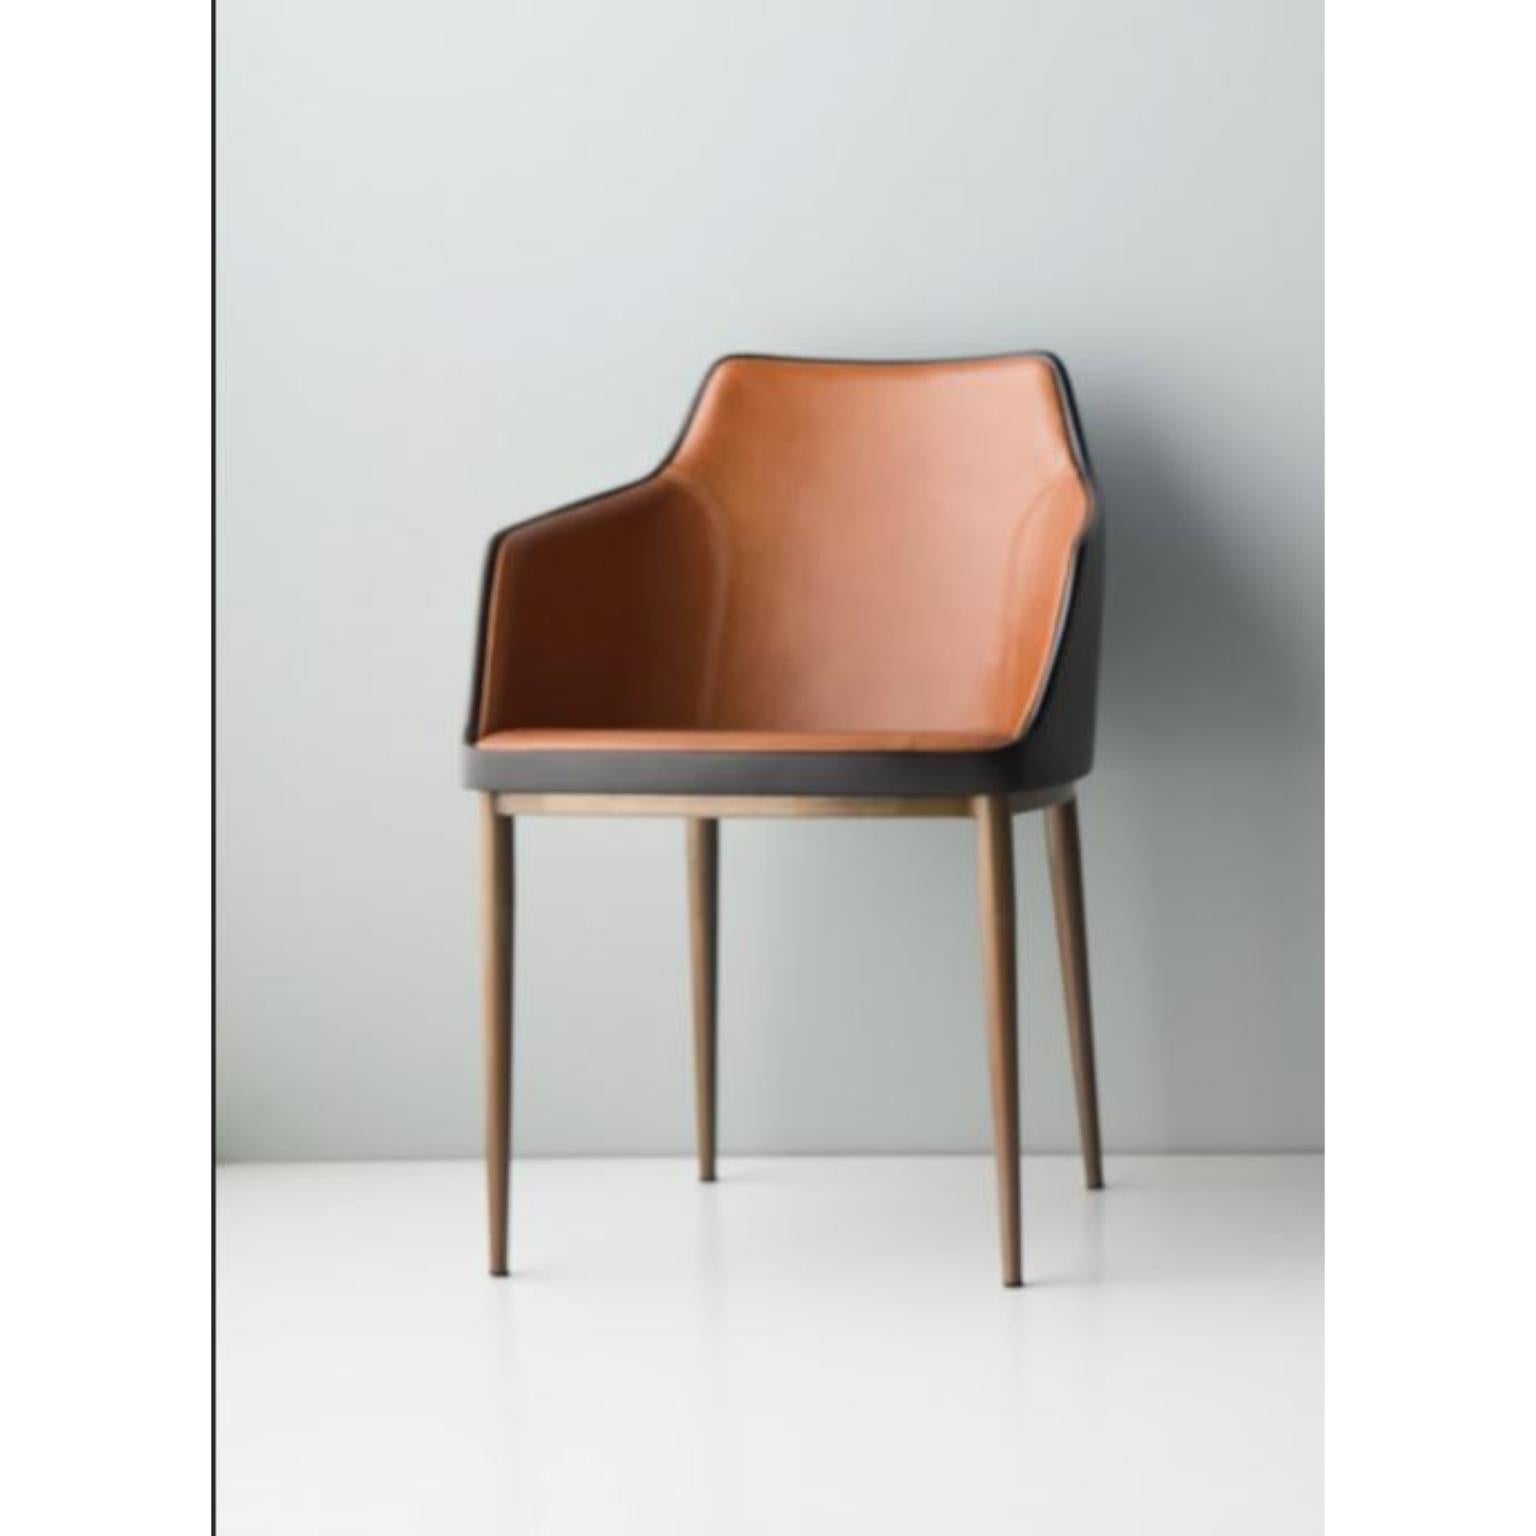 Chaise Bloo avec bras par Doimo Brasil
Dimensions : L 50 x P 53 x H 79 cm 
Matériaux : Chaise en métal et fibre de verre avec assise rembourrée.


Dans un souci de bon goût et de personnalité, Doimo décrypte les tendances et suit l'évolution de